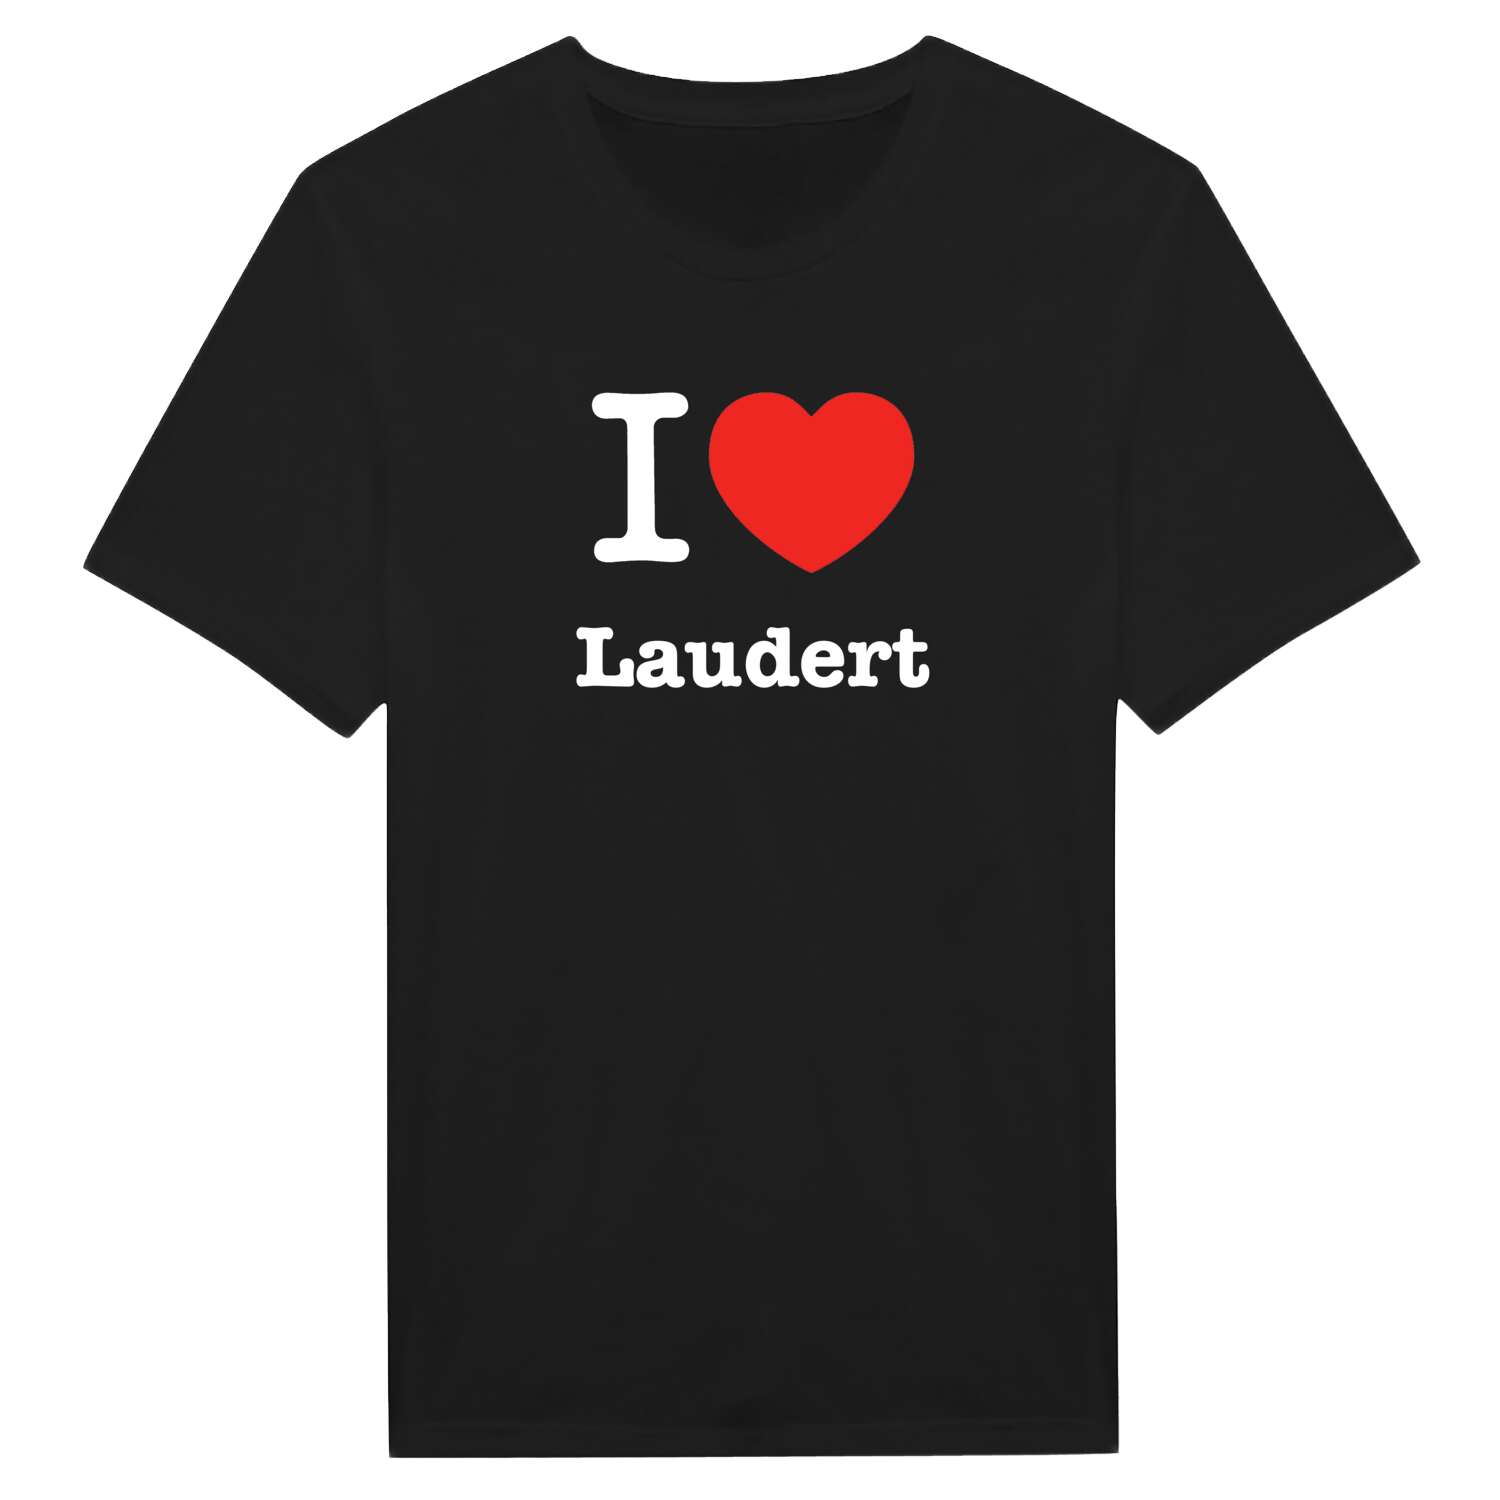 Laudert T-Shirt »I love«